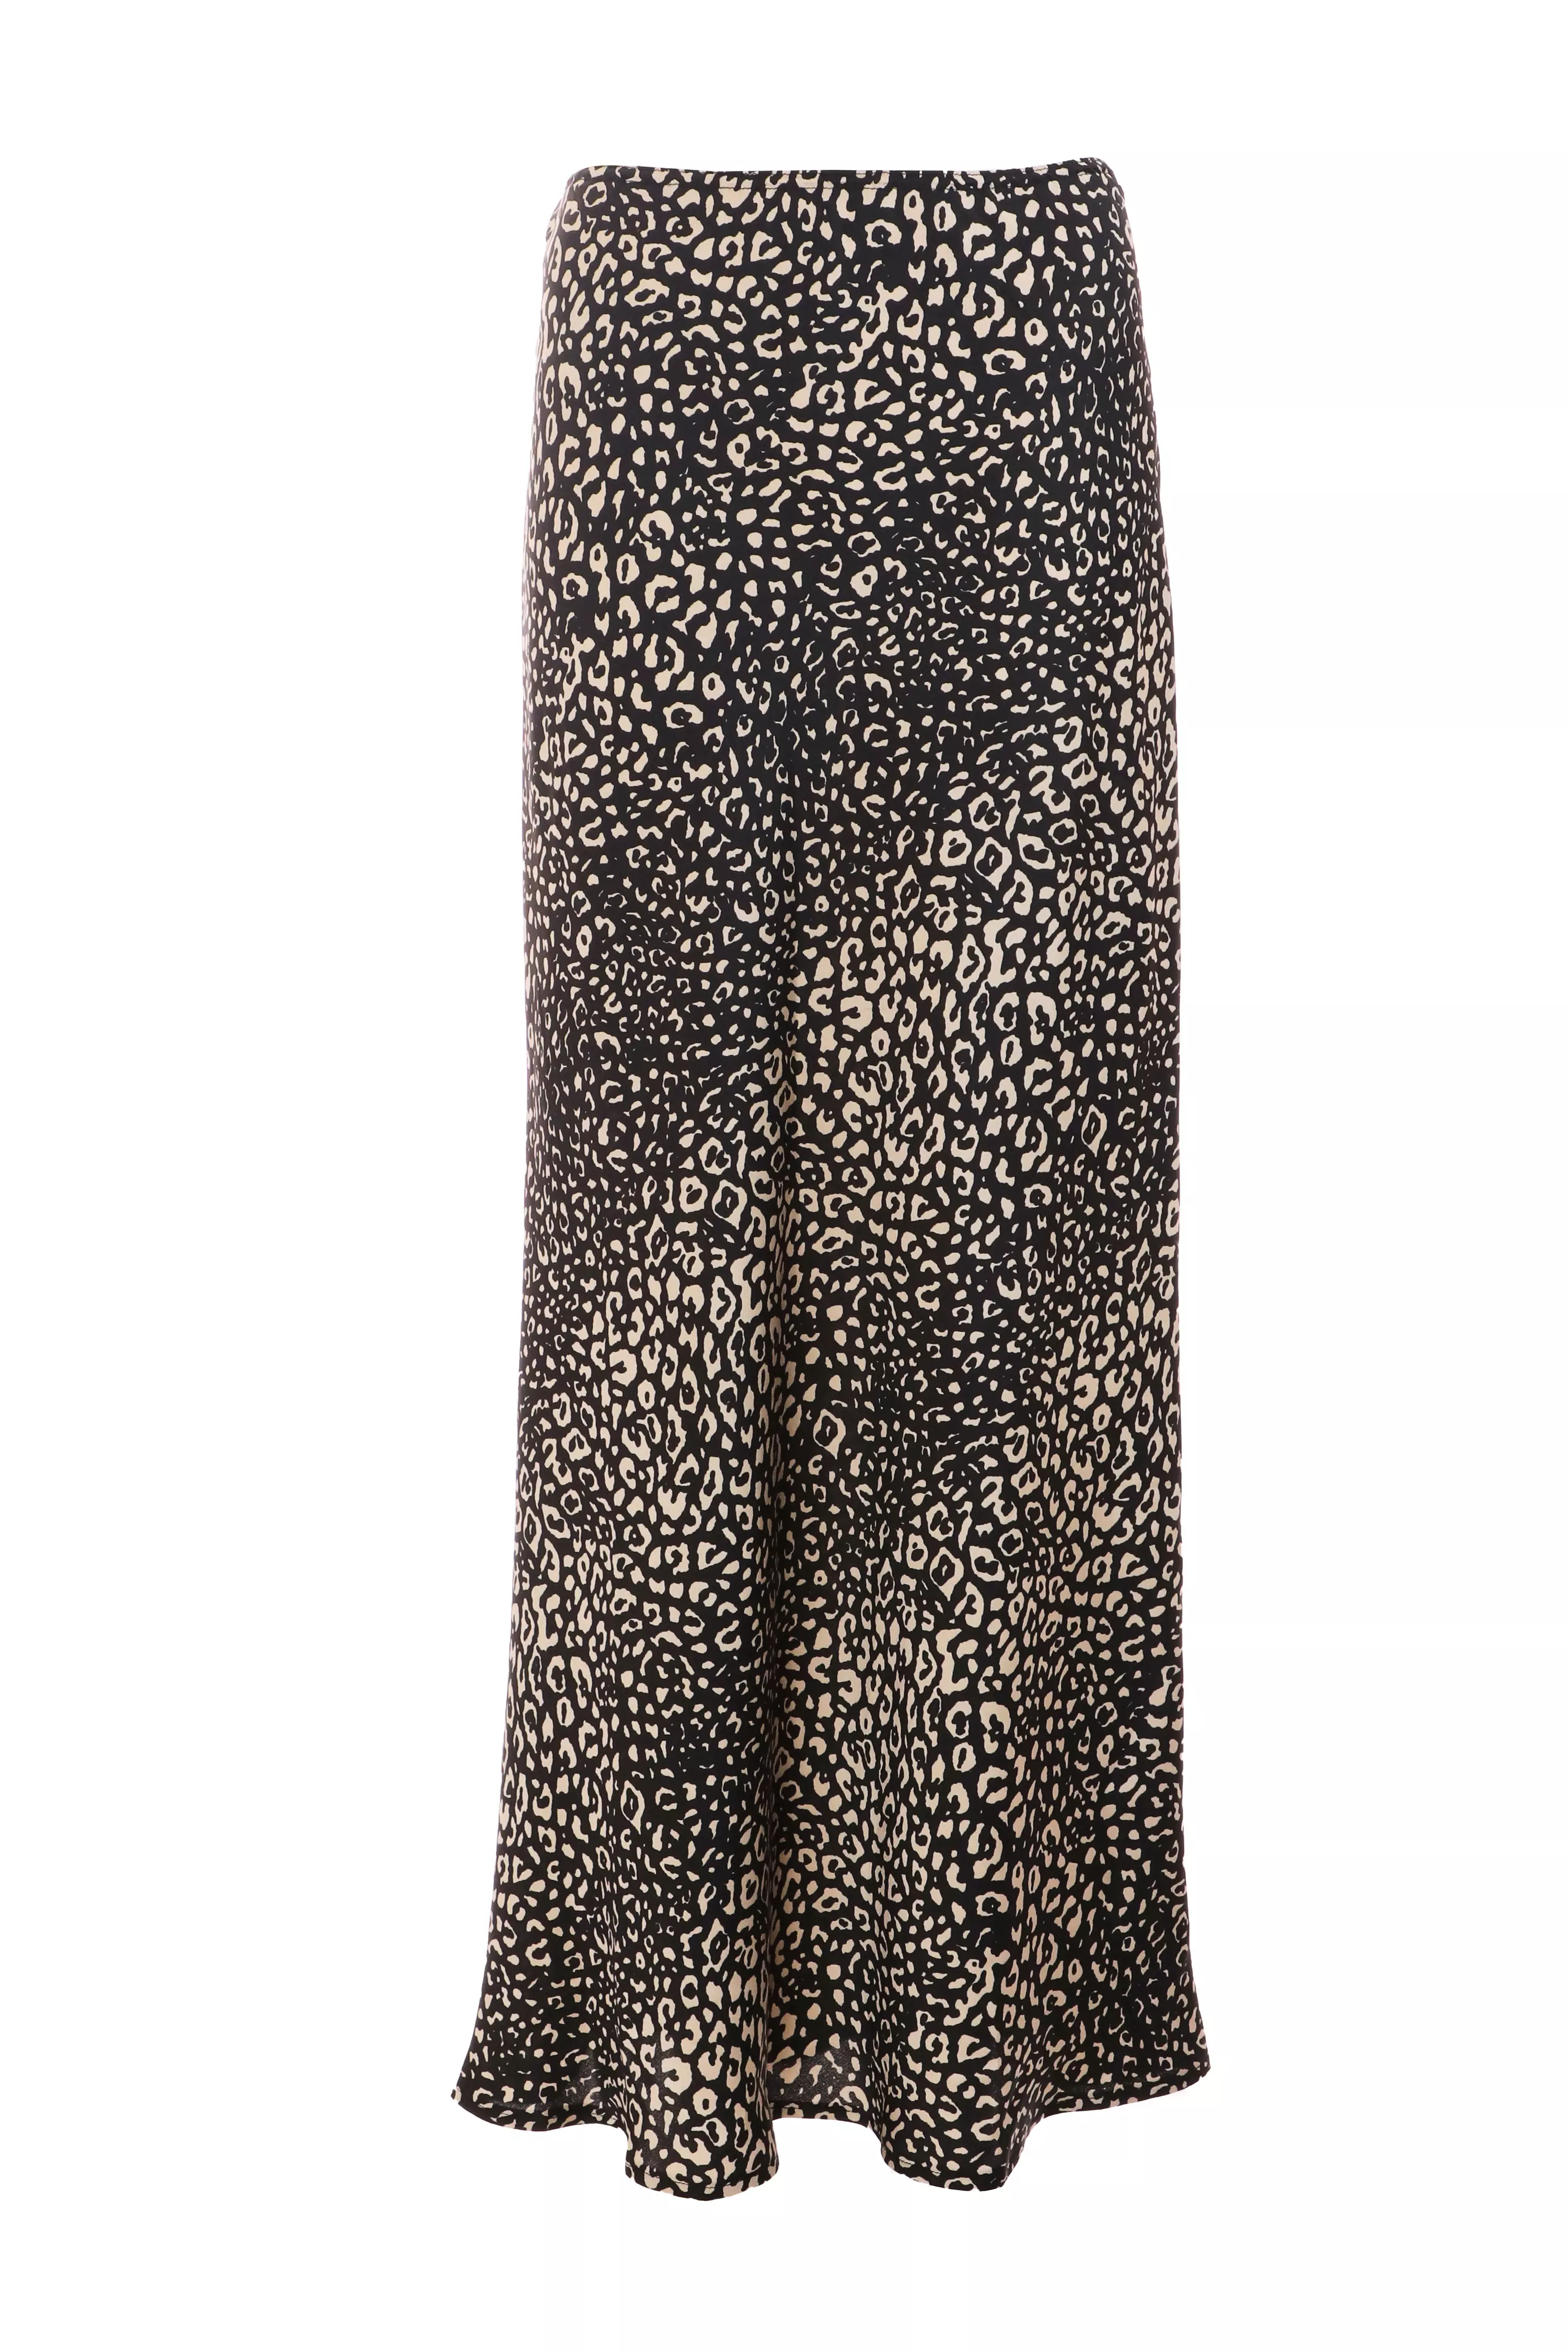 Black Satin Animal Print Midaxi Skirt - QUIZ Clothing